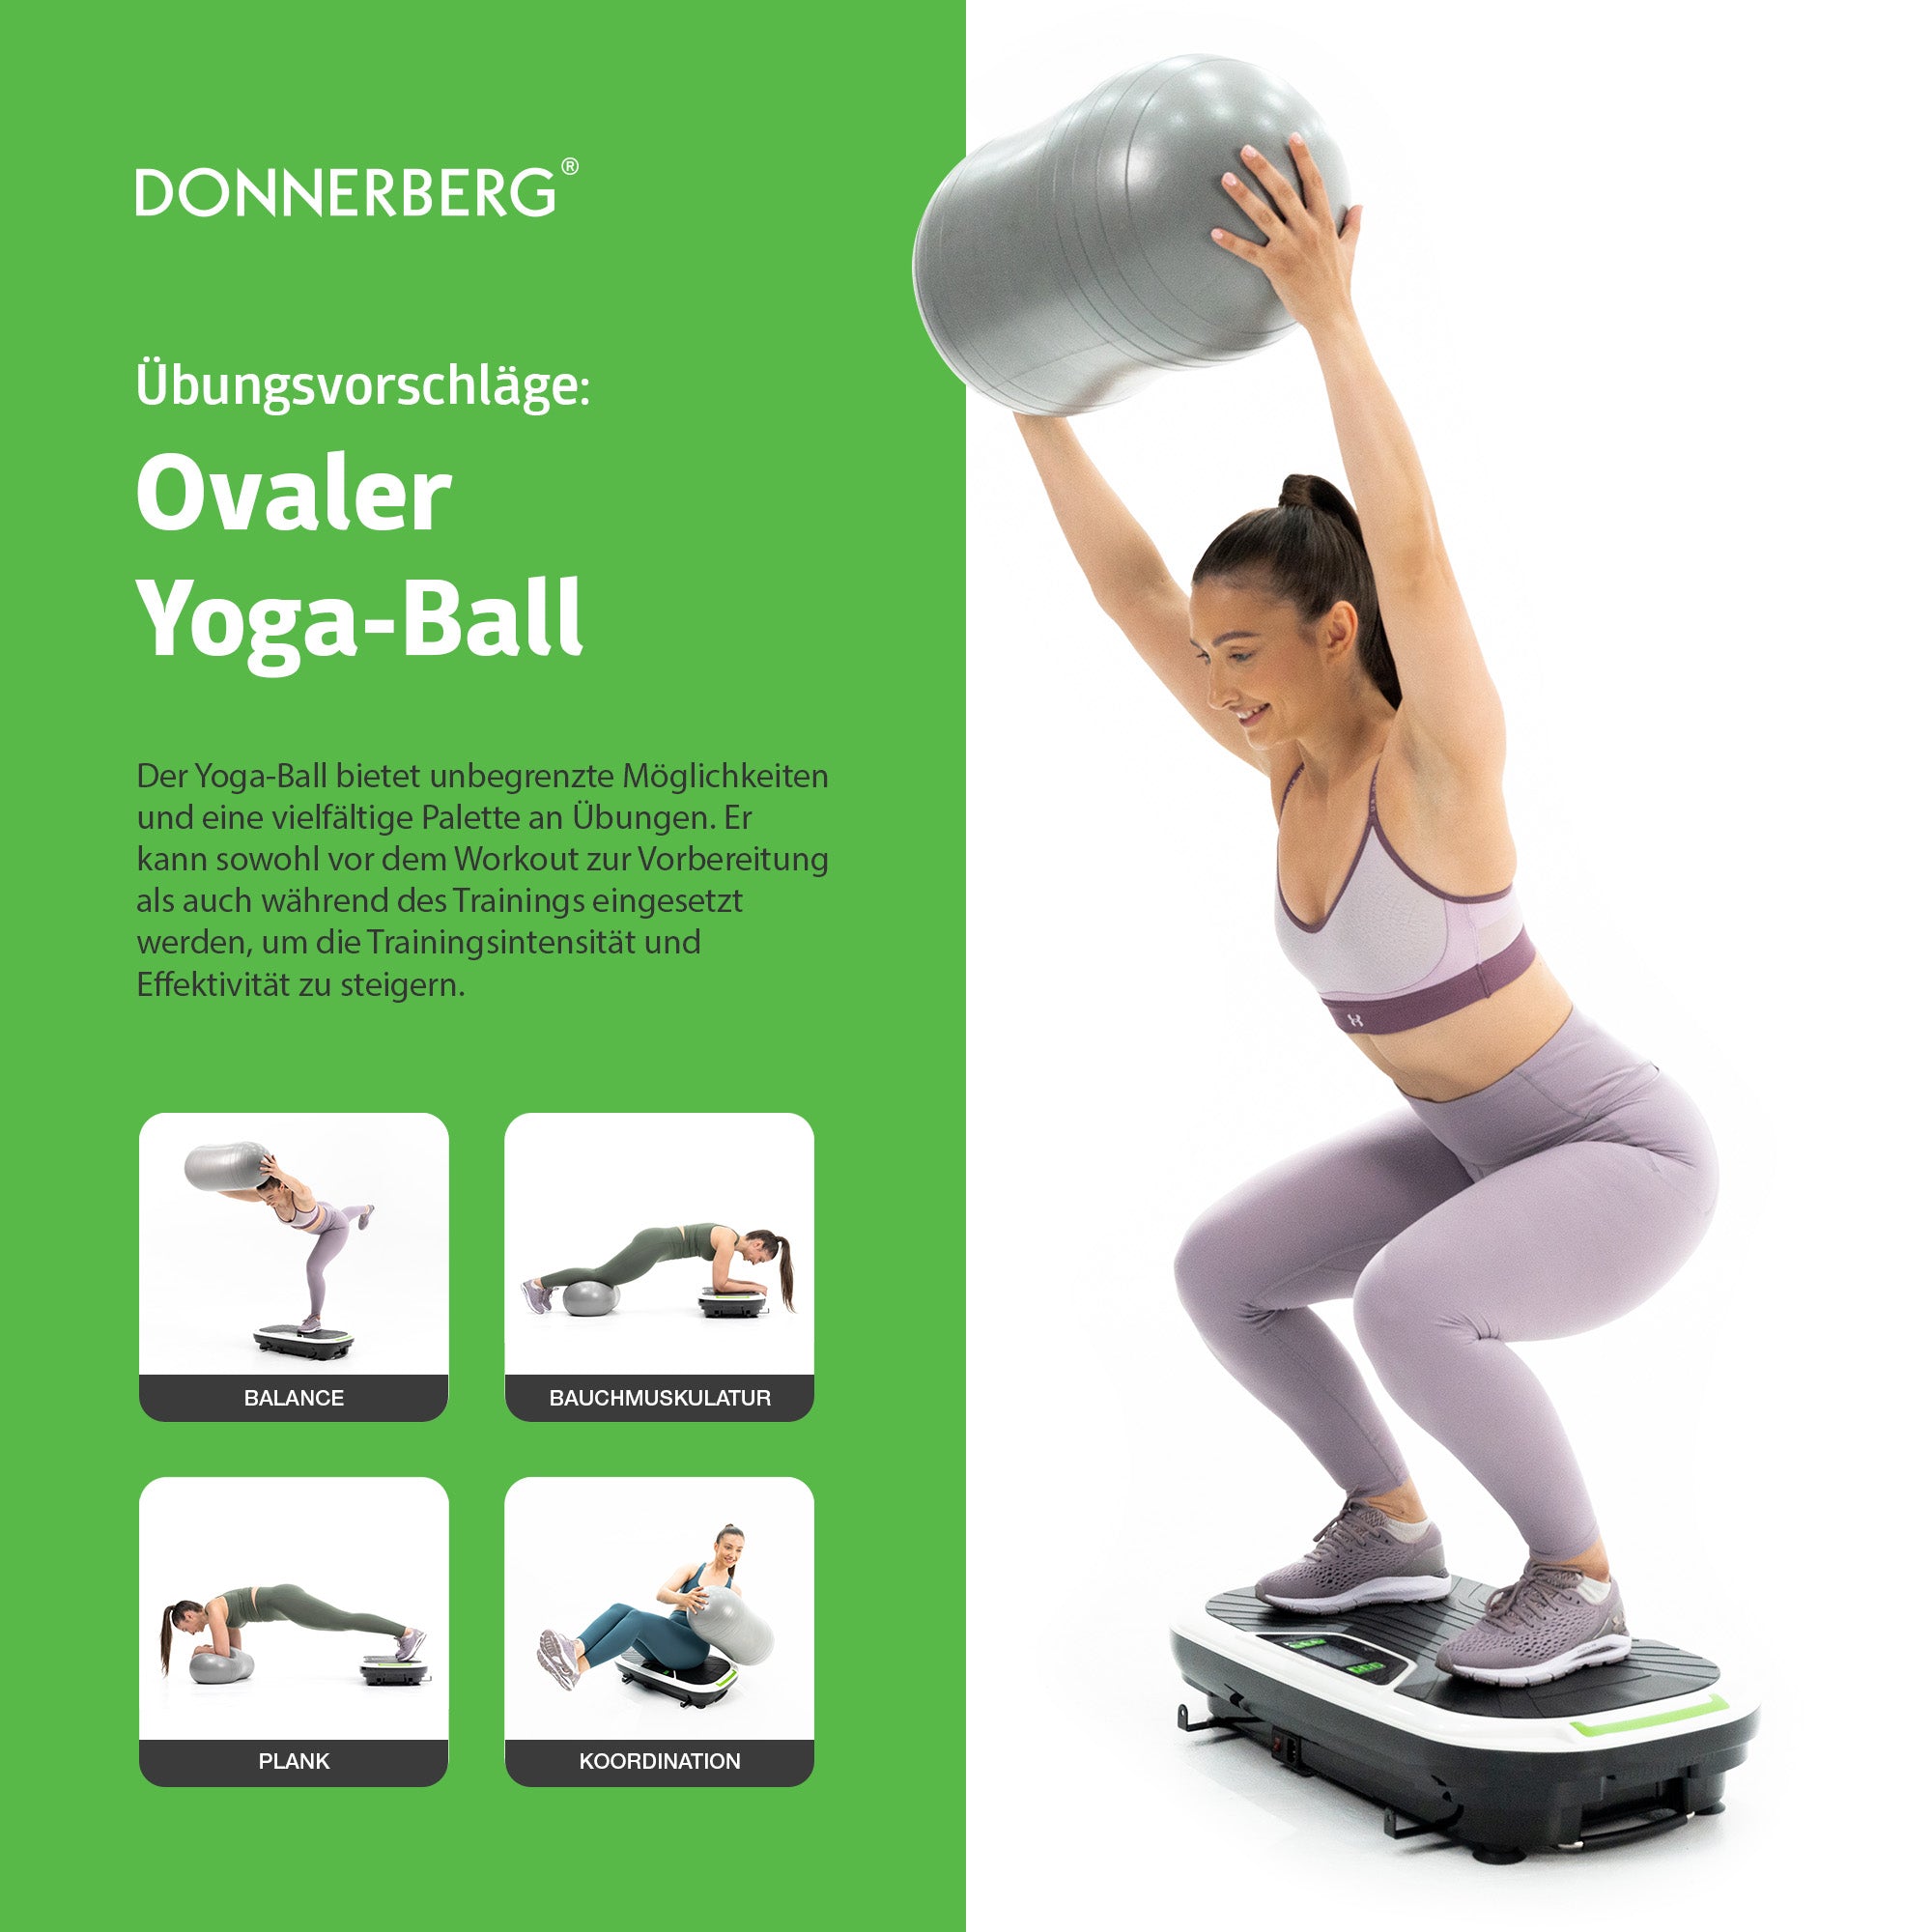 Accessori: palla ovale per lo yoga. Suggerimenti per gli esercizi: Piastra di vibrazione Thera